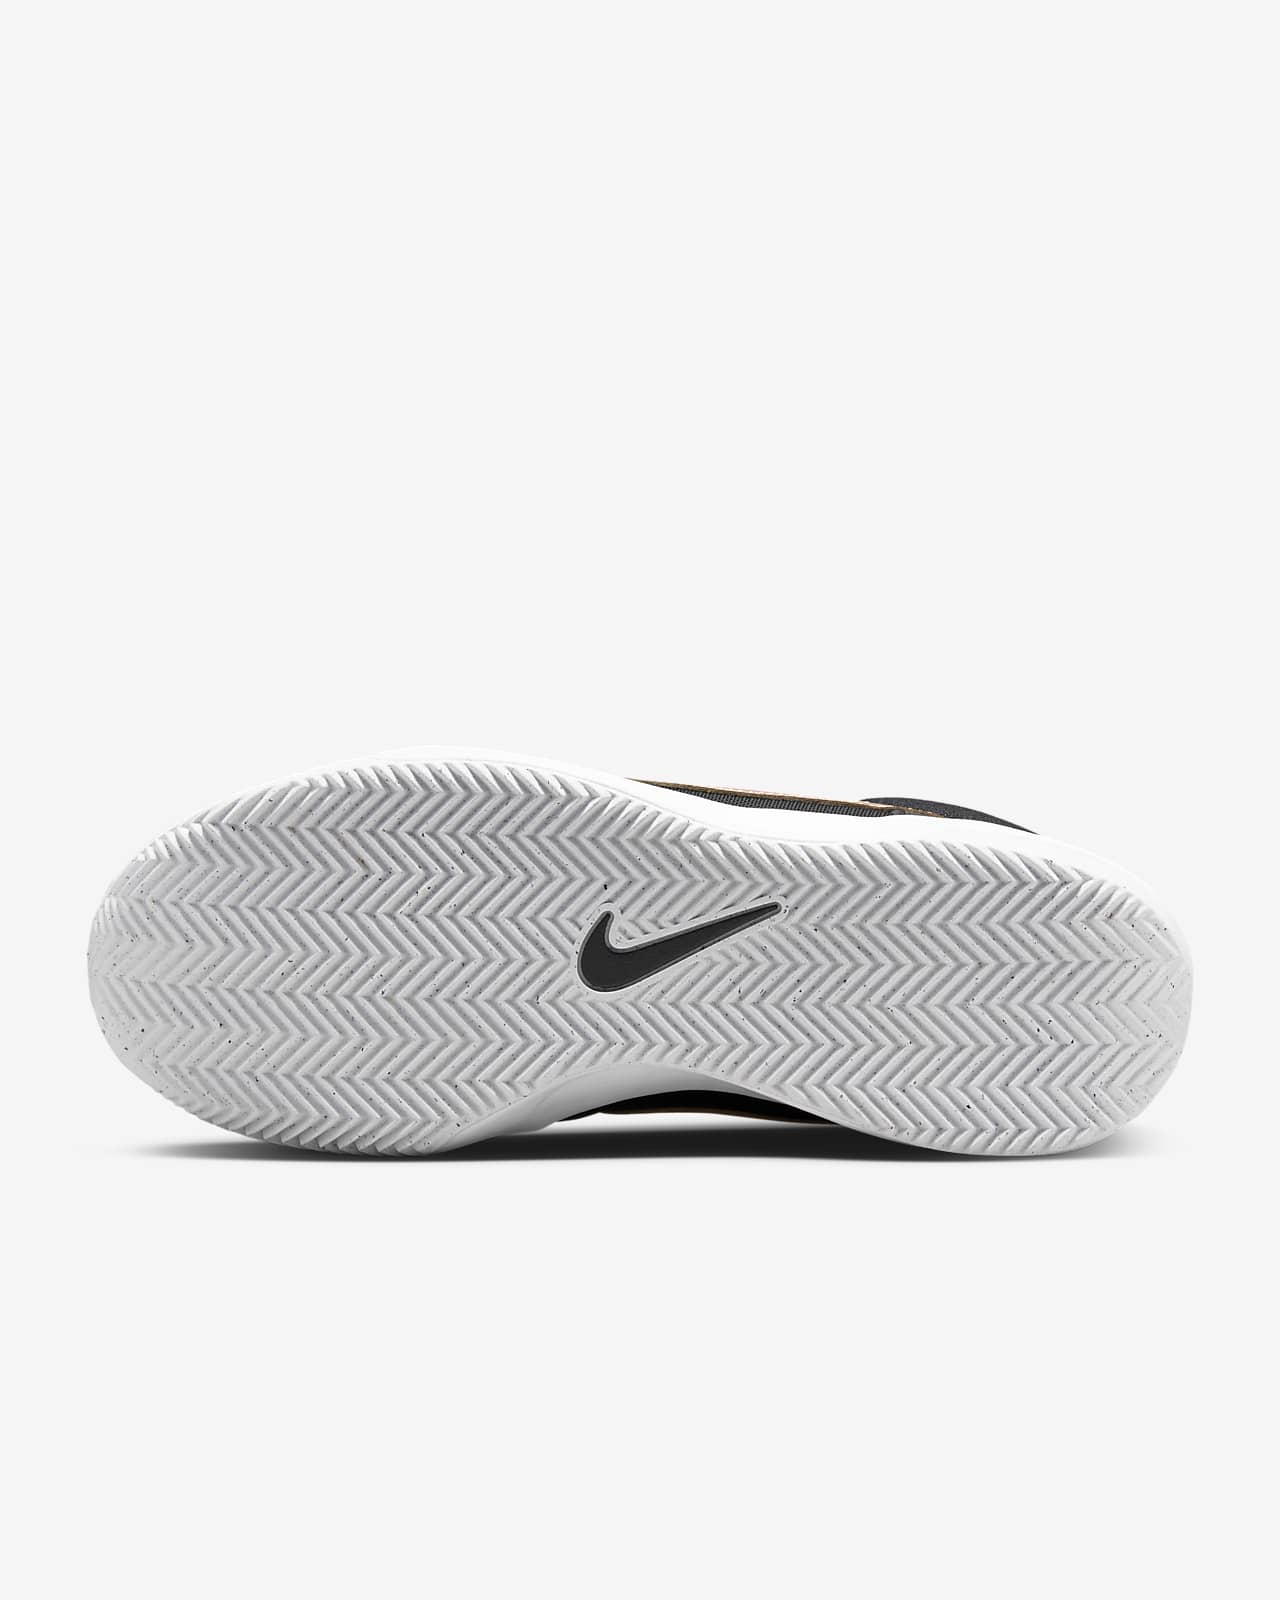 NikeCourt Zoom Lite 3 Zapatillas tenis tierra batida - Mujer. Nike ES